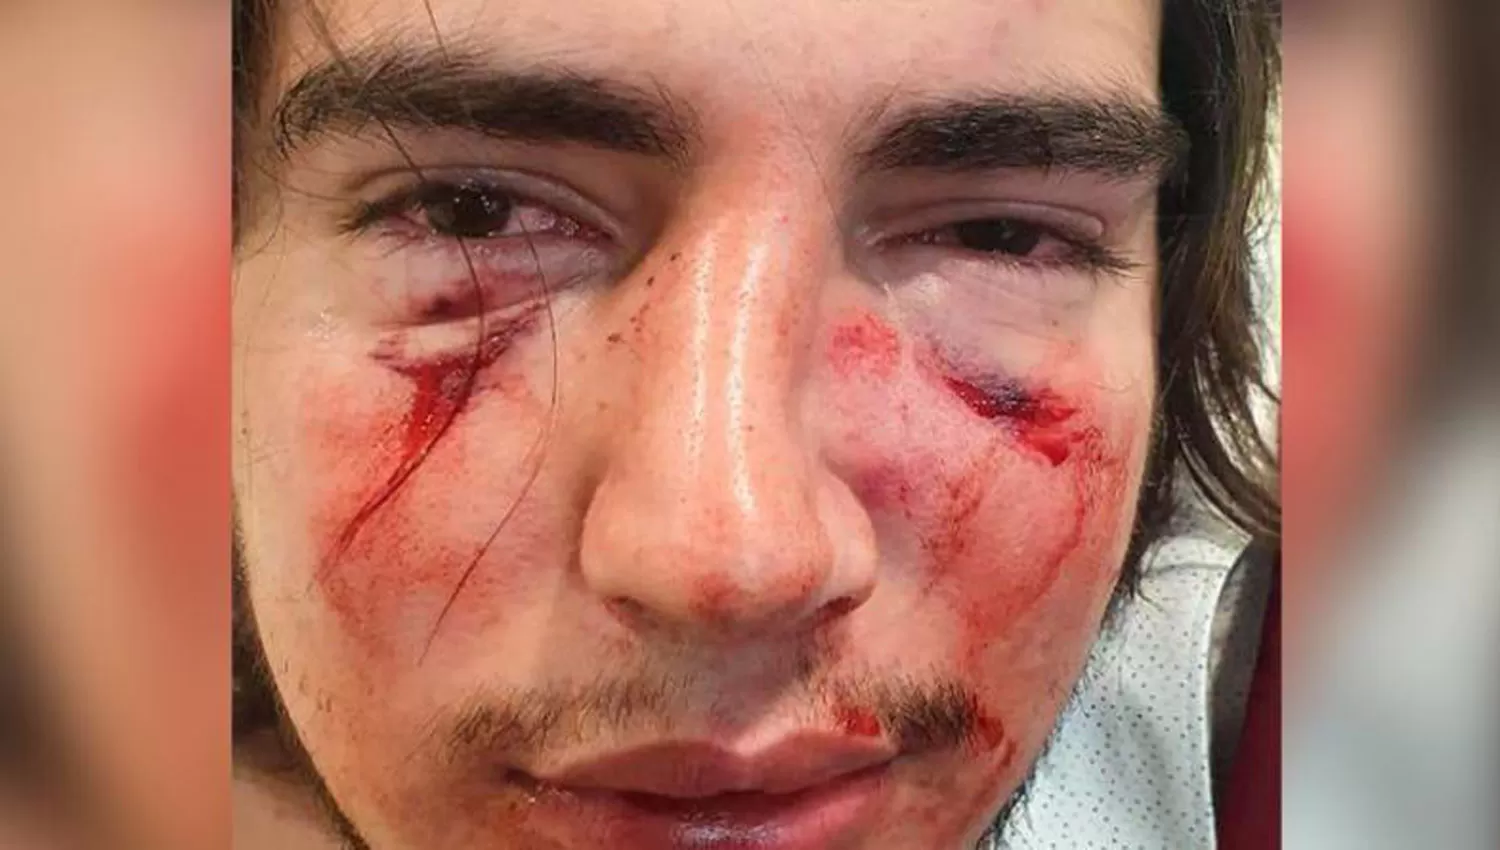 LA VÍCTIMA. Lautaro Insúa recibió golpes de puño en la cara y patadas cuando cayó al piso.